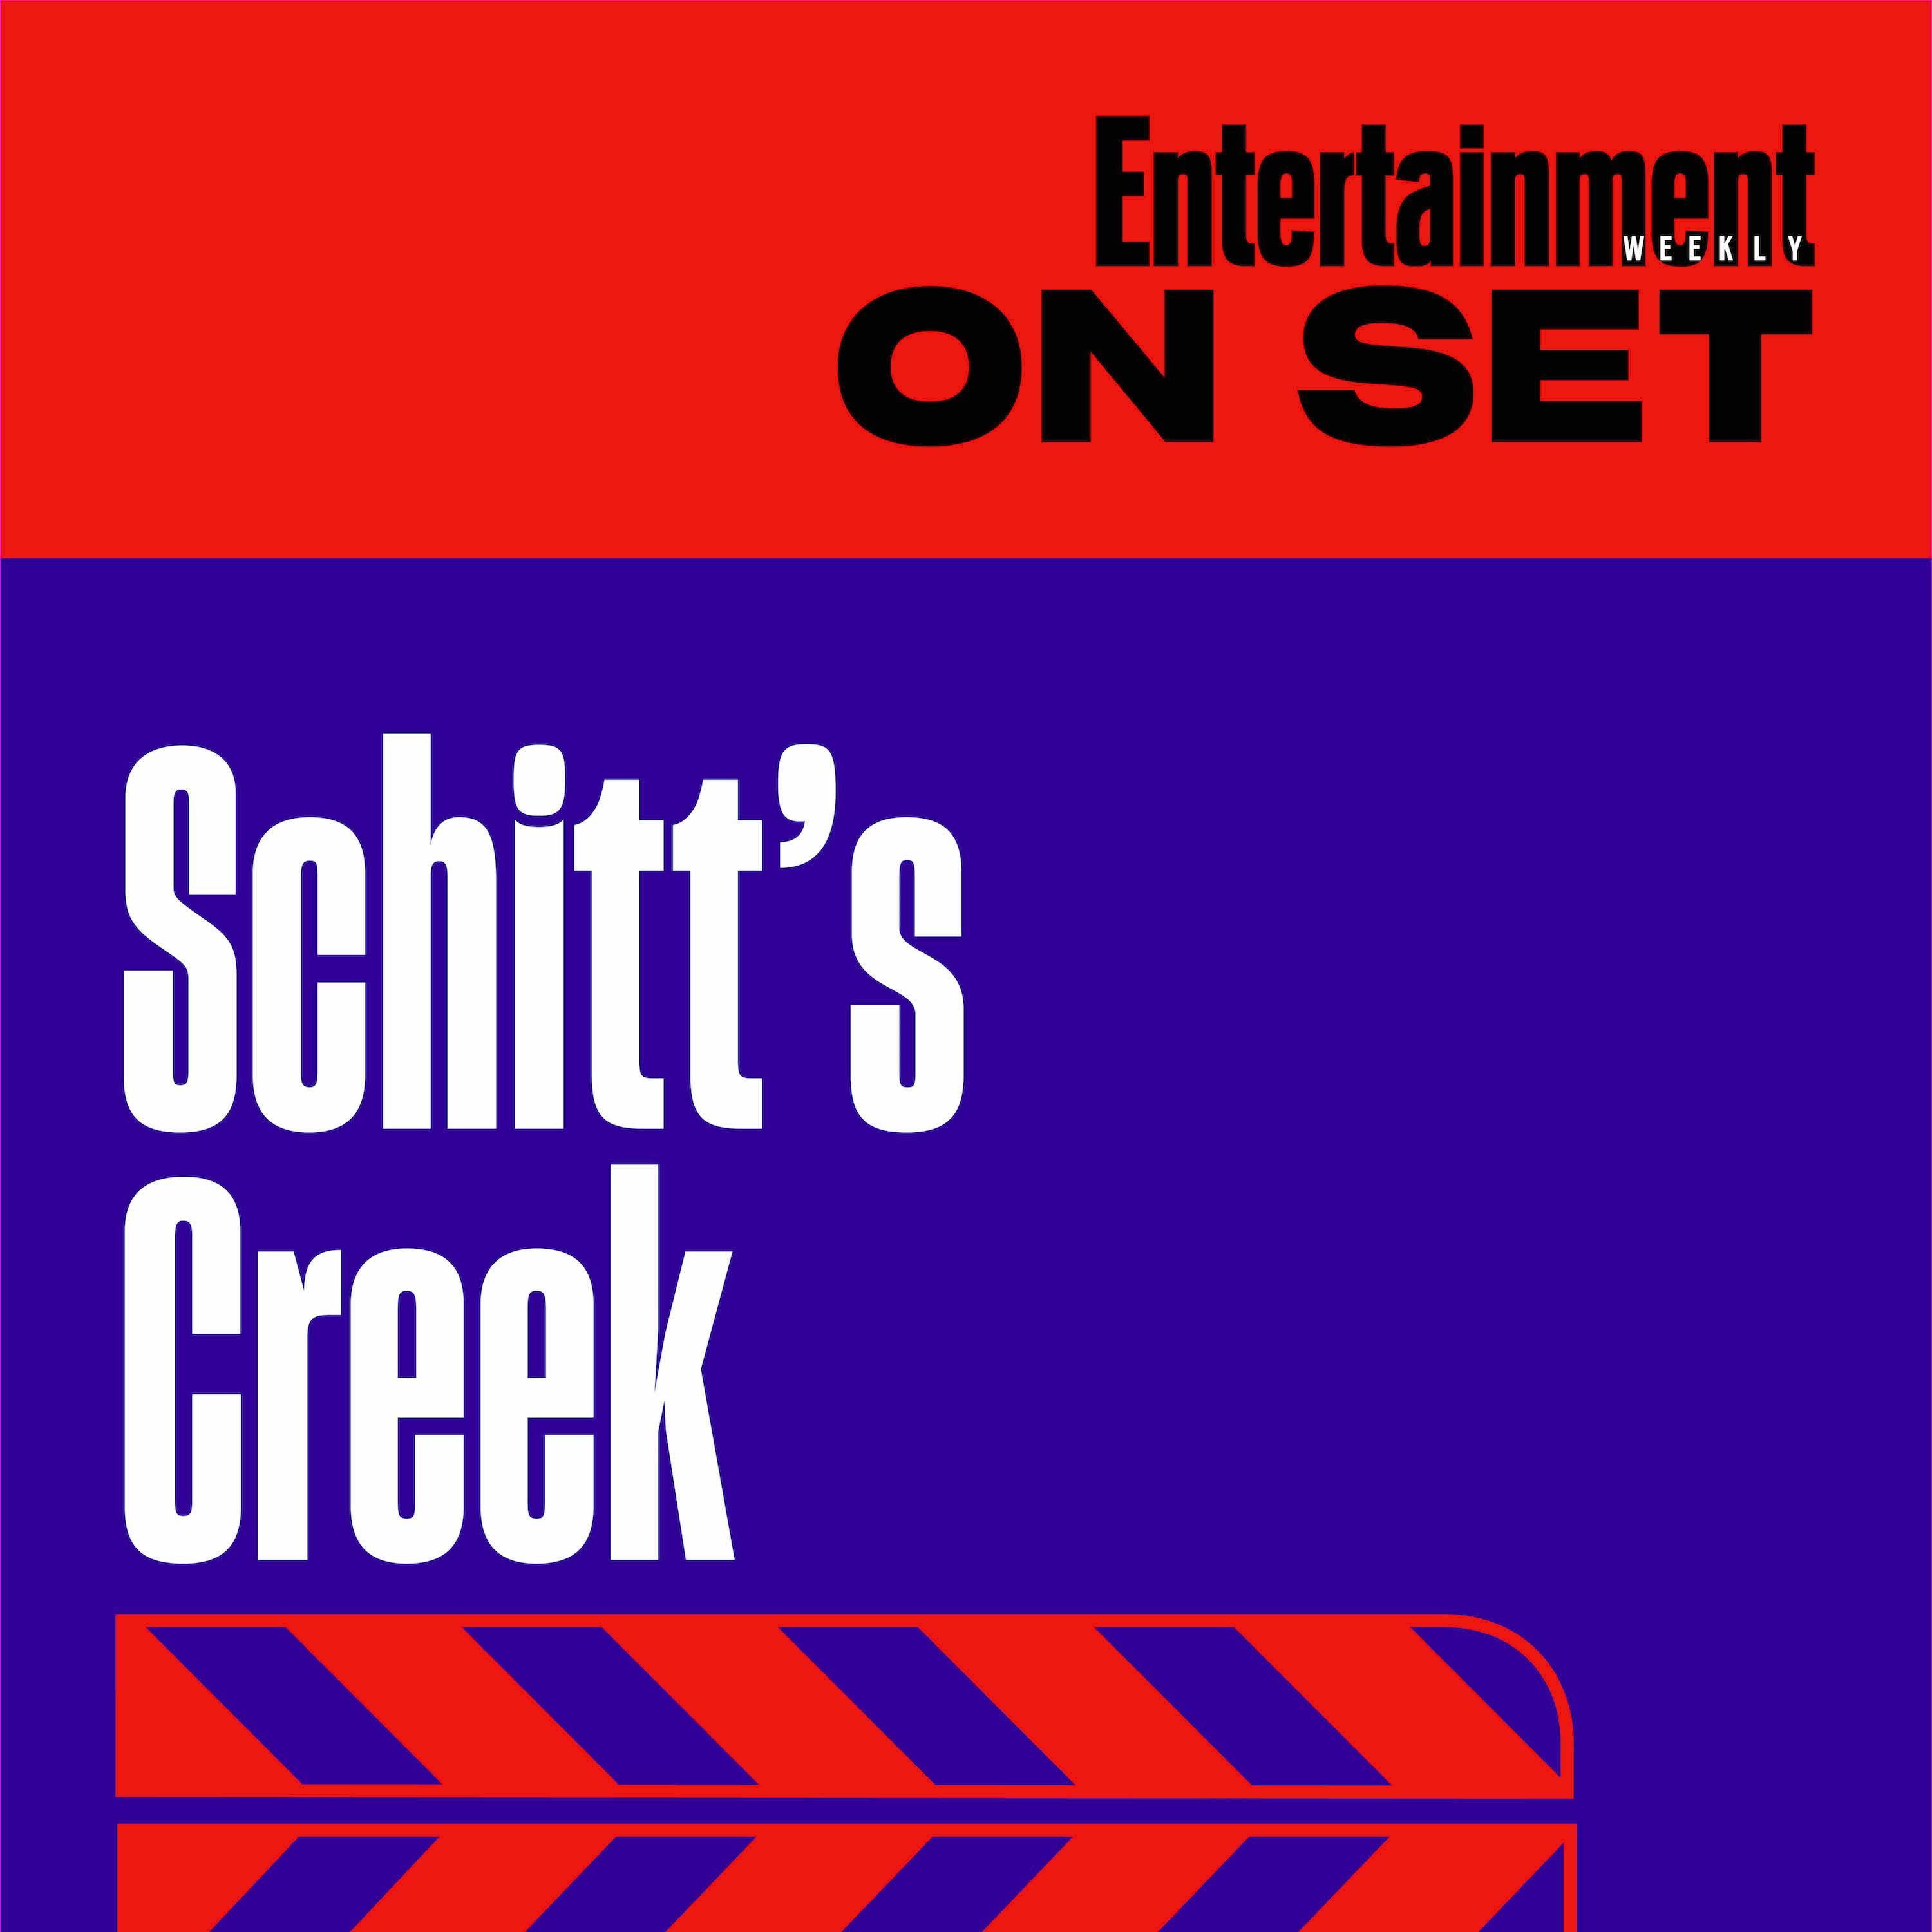 EW On Set: Schitt's Creek Episode 6.07 "Moira Rosé"